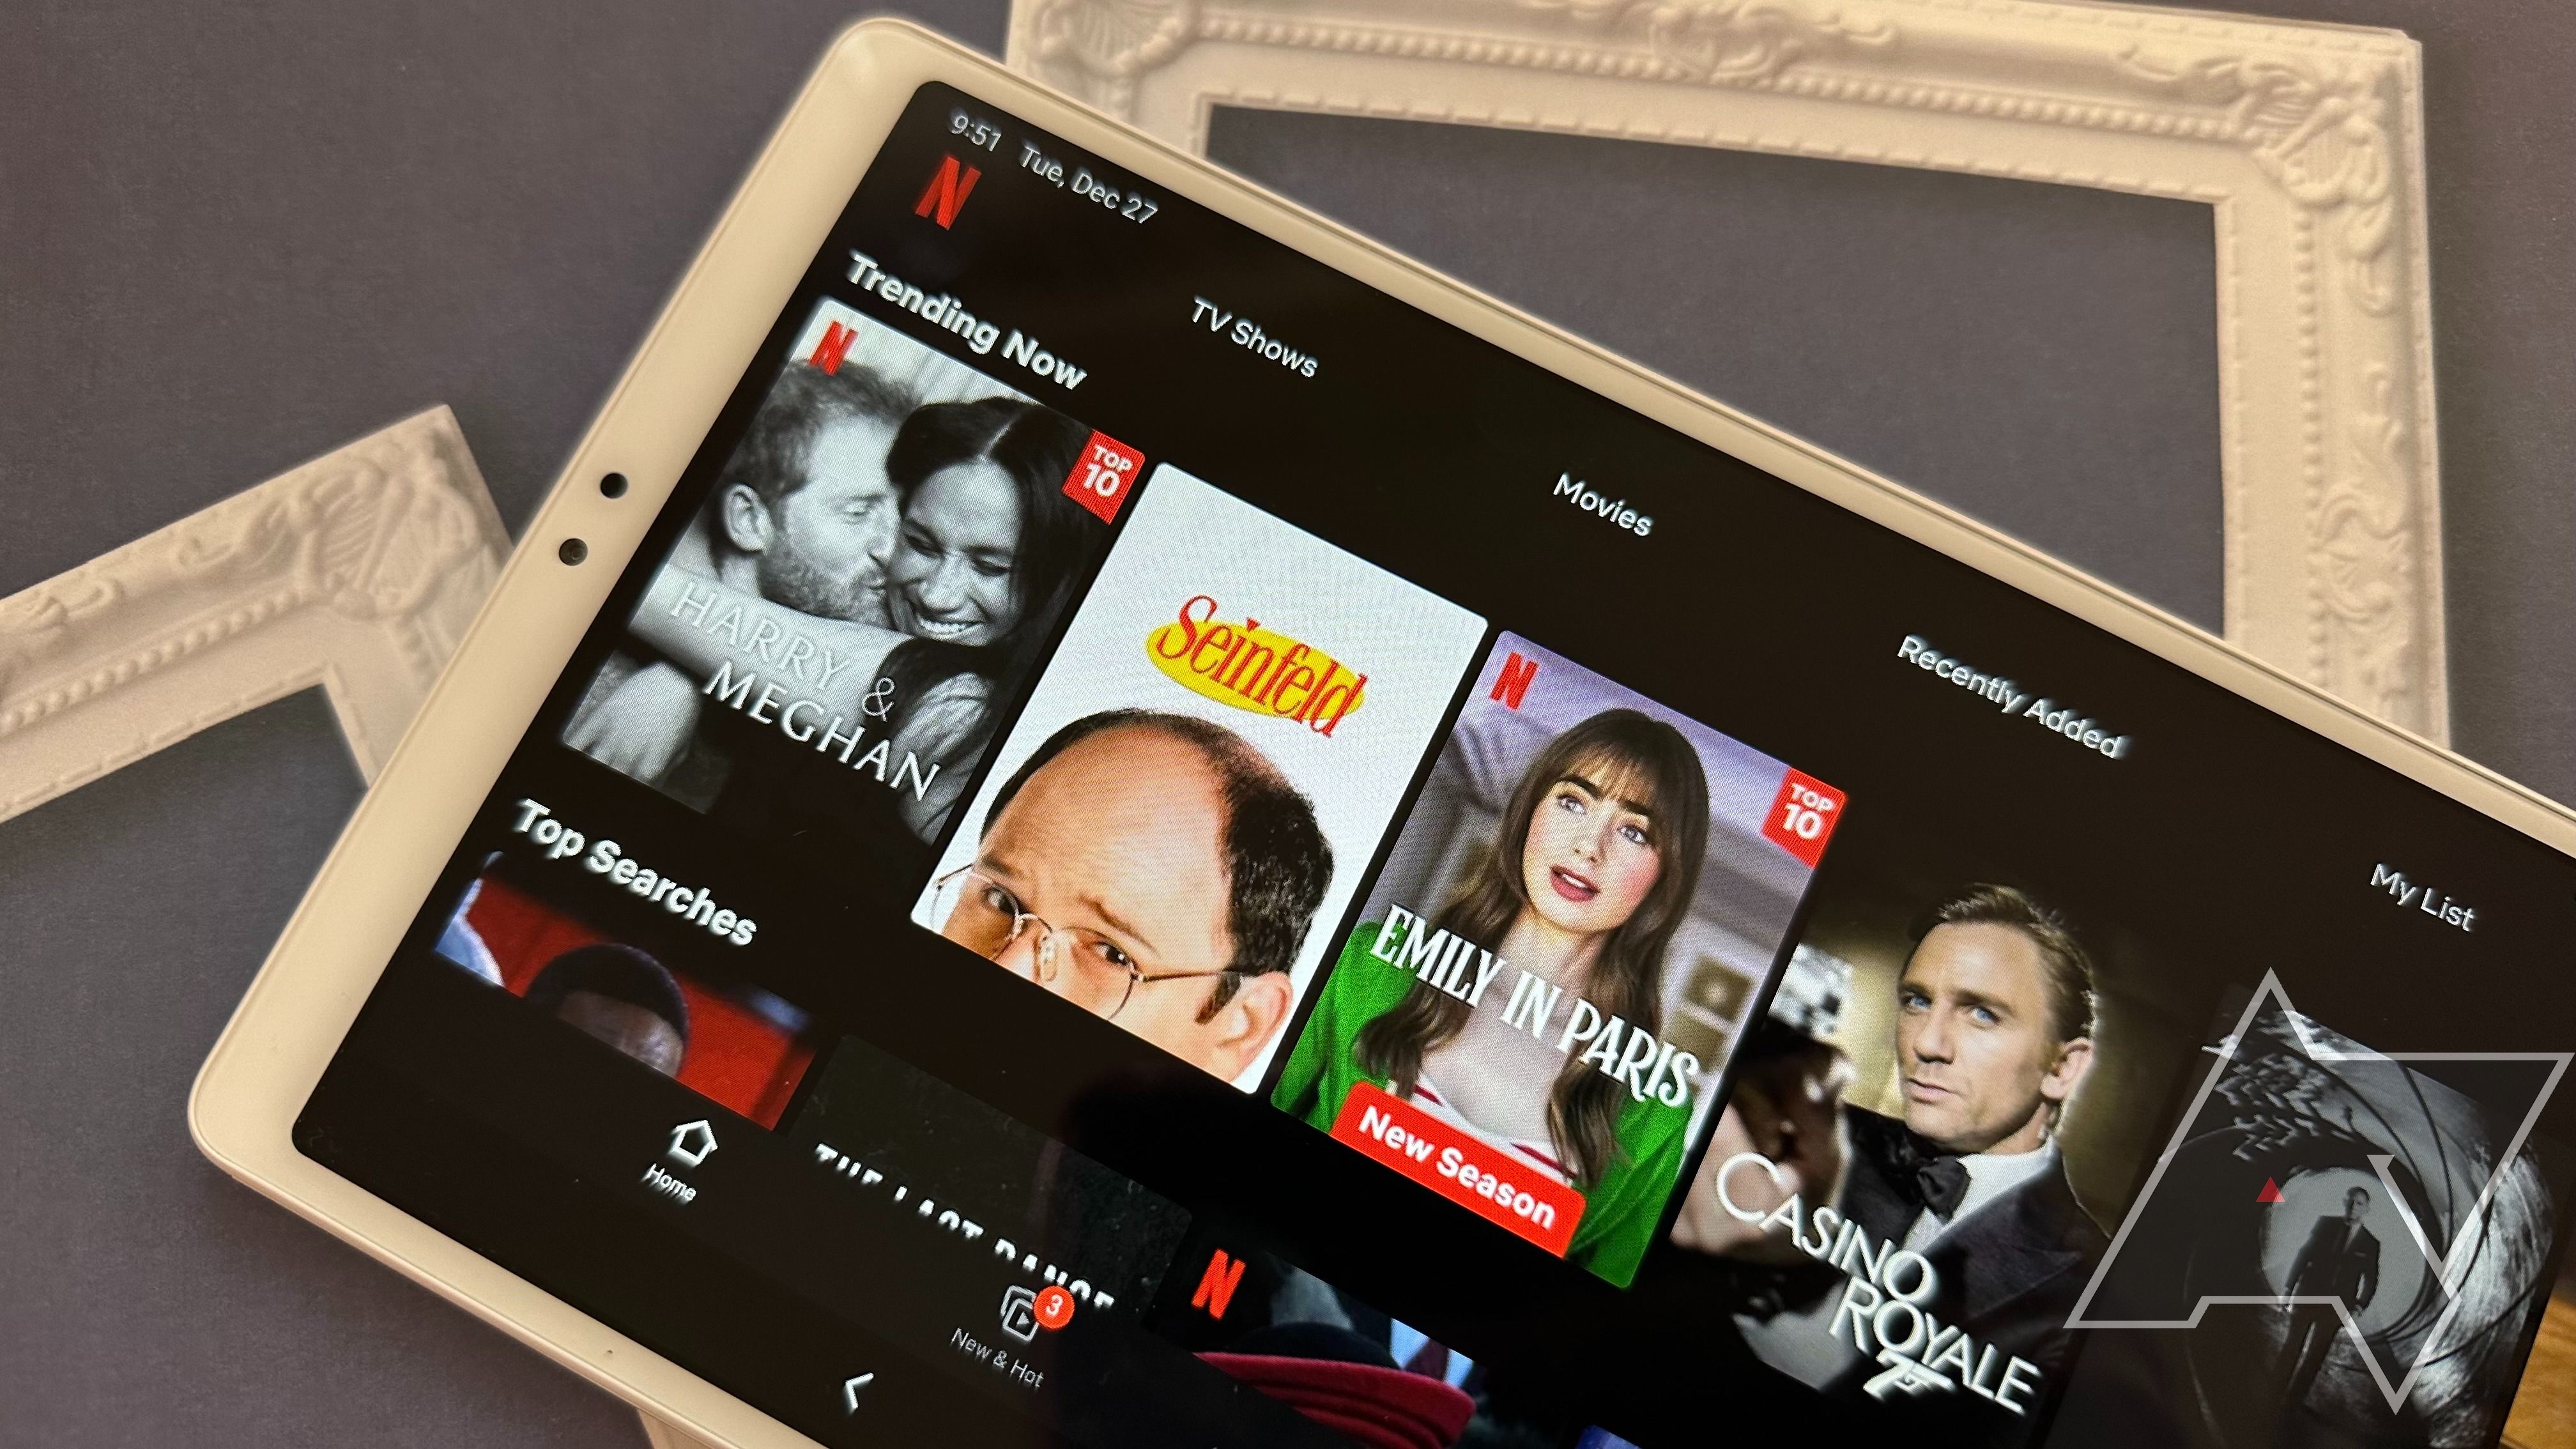 Netflix running on the Samsung Galaxy A7 Lite